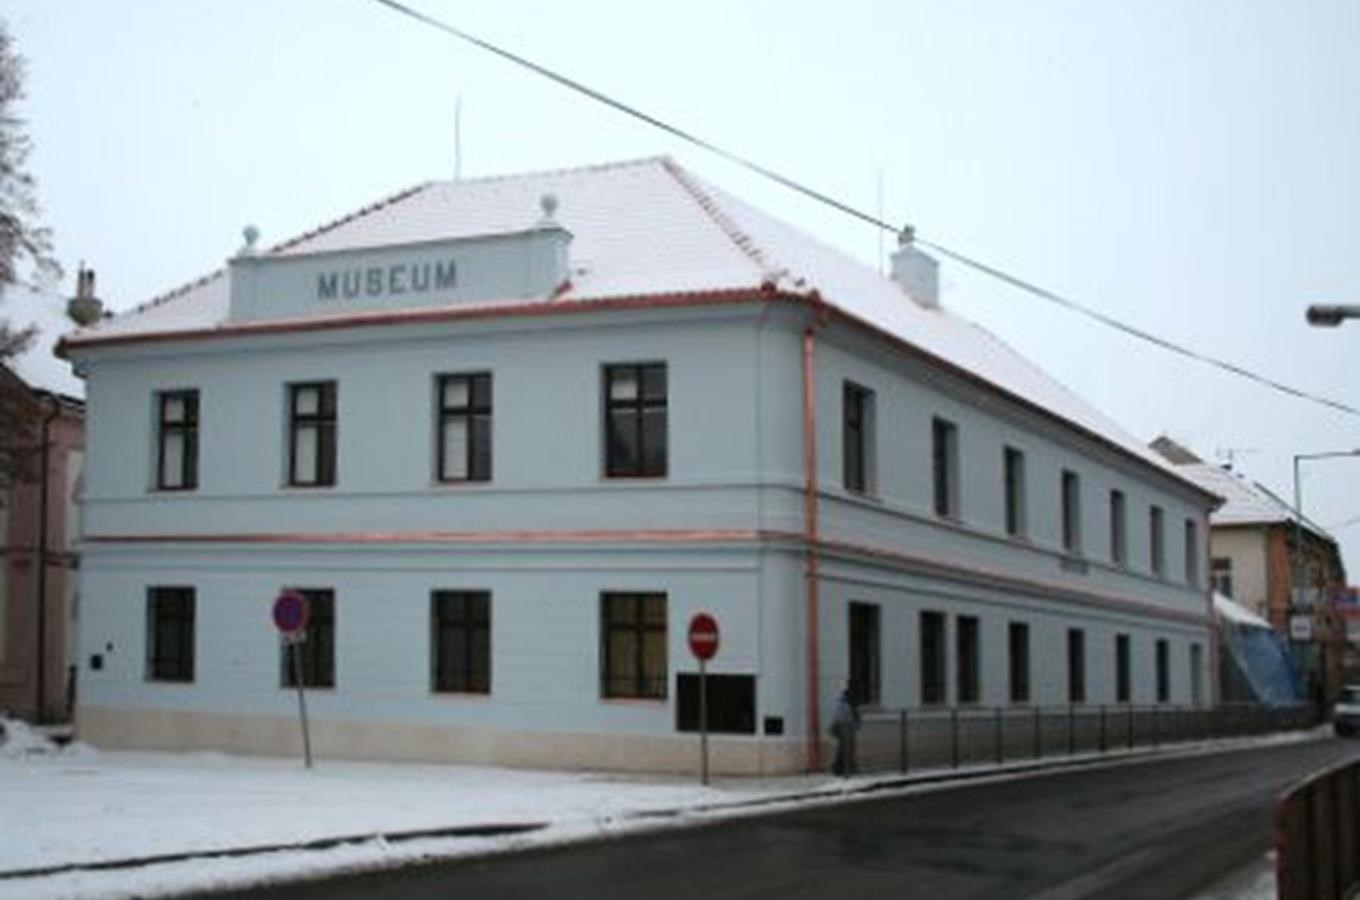 Polabské muzeum v Poděbradech